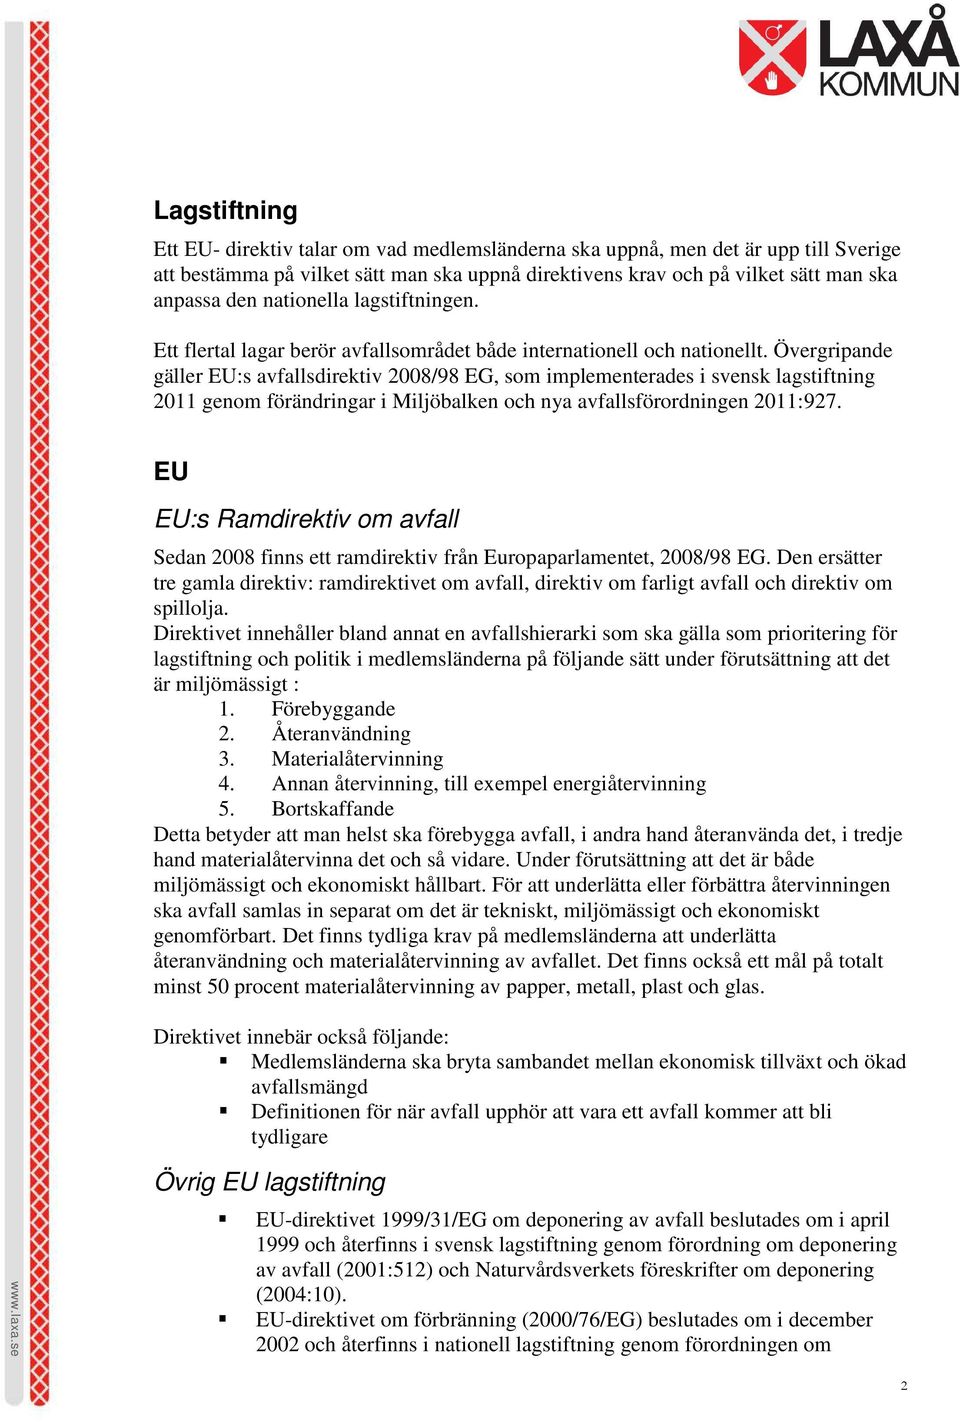 Övergripande gäller EU:s avfallsdirektiv 2008/98 EG, som implementerades i svensk lagstiftning 2011 genom förändringar i Miljöbalken och nya avfallsförordningen 2011:927.